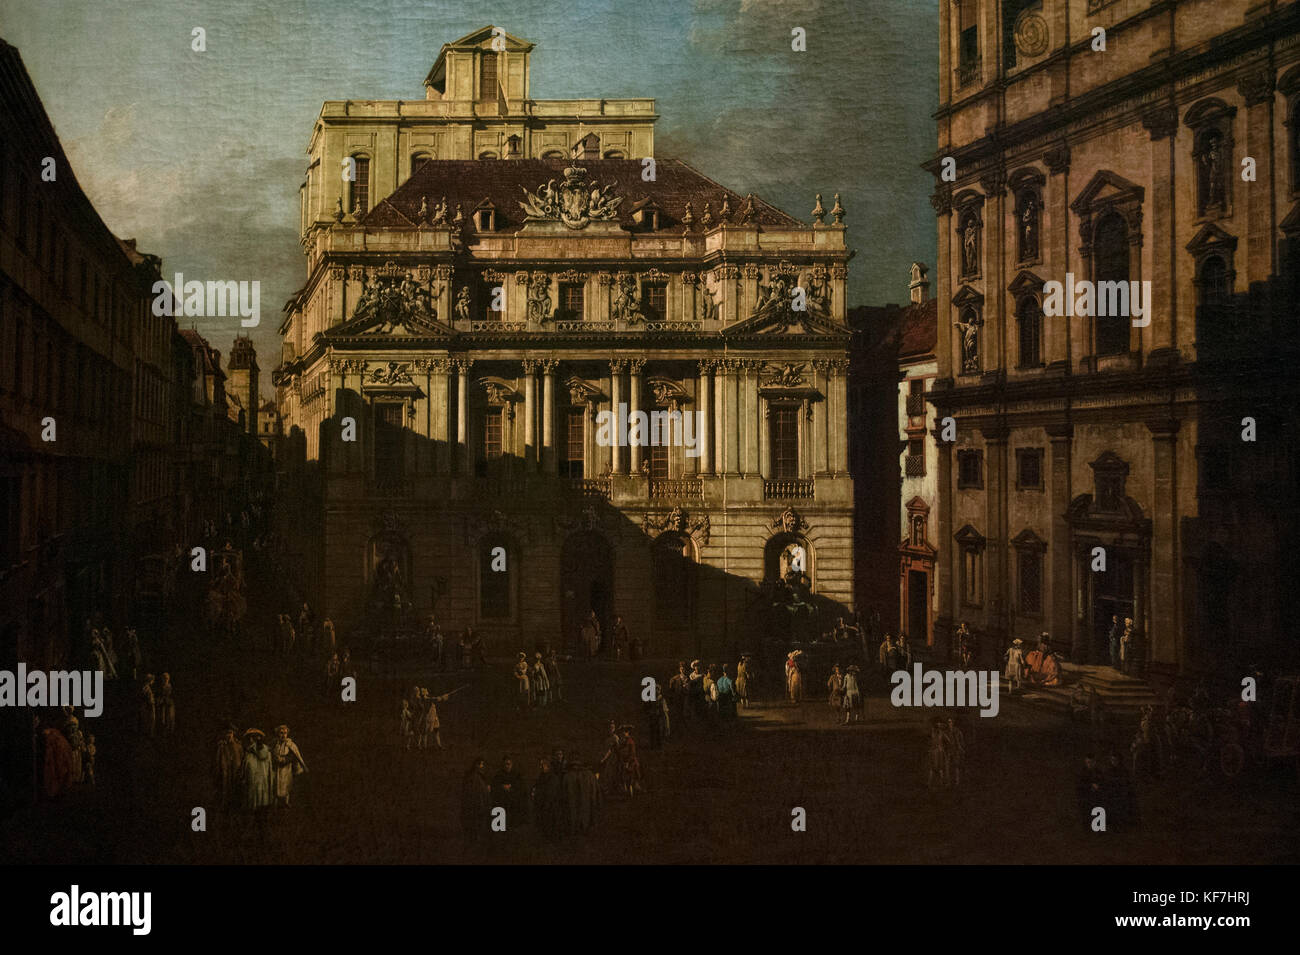 Bernardo Bellotto (1721/2-1780). paesaggio urbano italiano pittore. Università di Vienna square, 1758-1761. Kunsthistorisches Museum (museo di storia dell'arte). vienna. Austria. Foto Stock